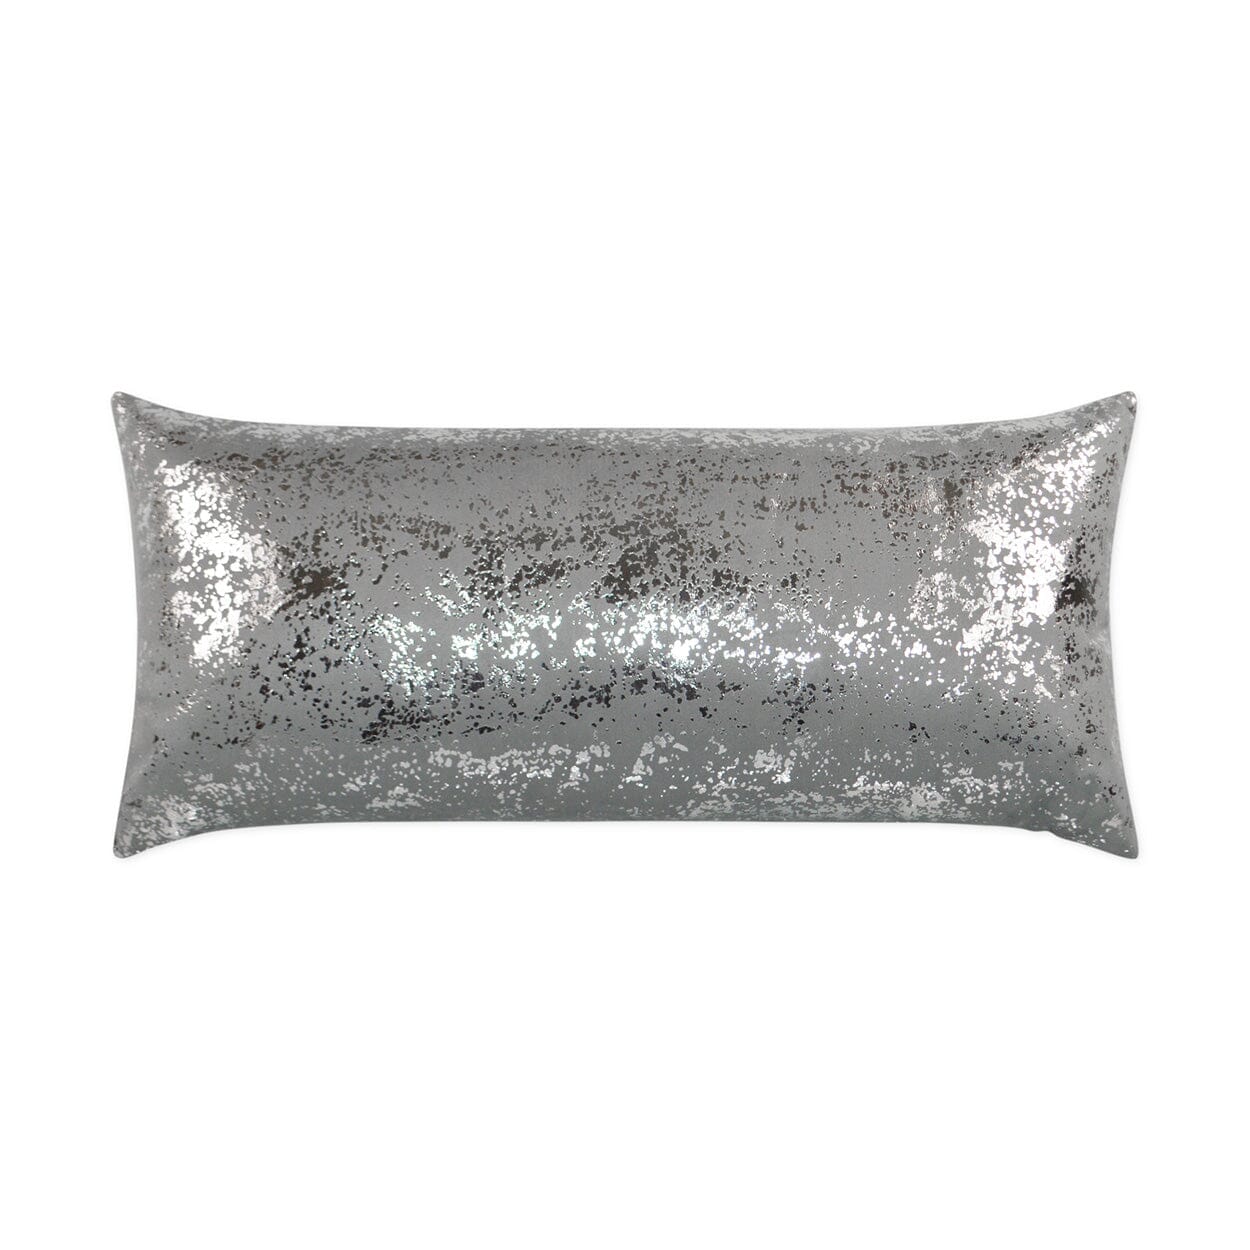 D.V. Kap 12" x 24" Outdoor Lumbar Pillow | Sand Dune Grey Pillows D.V Kap Outdoor